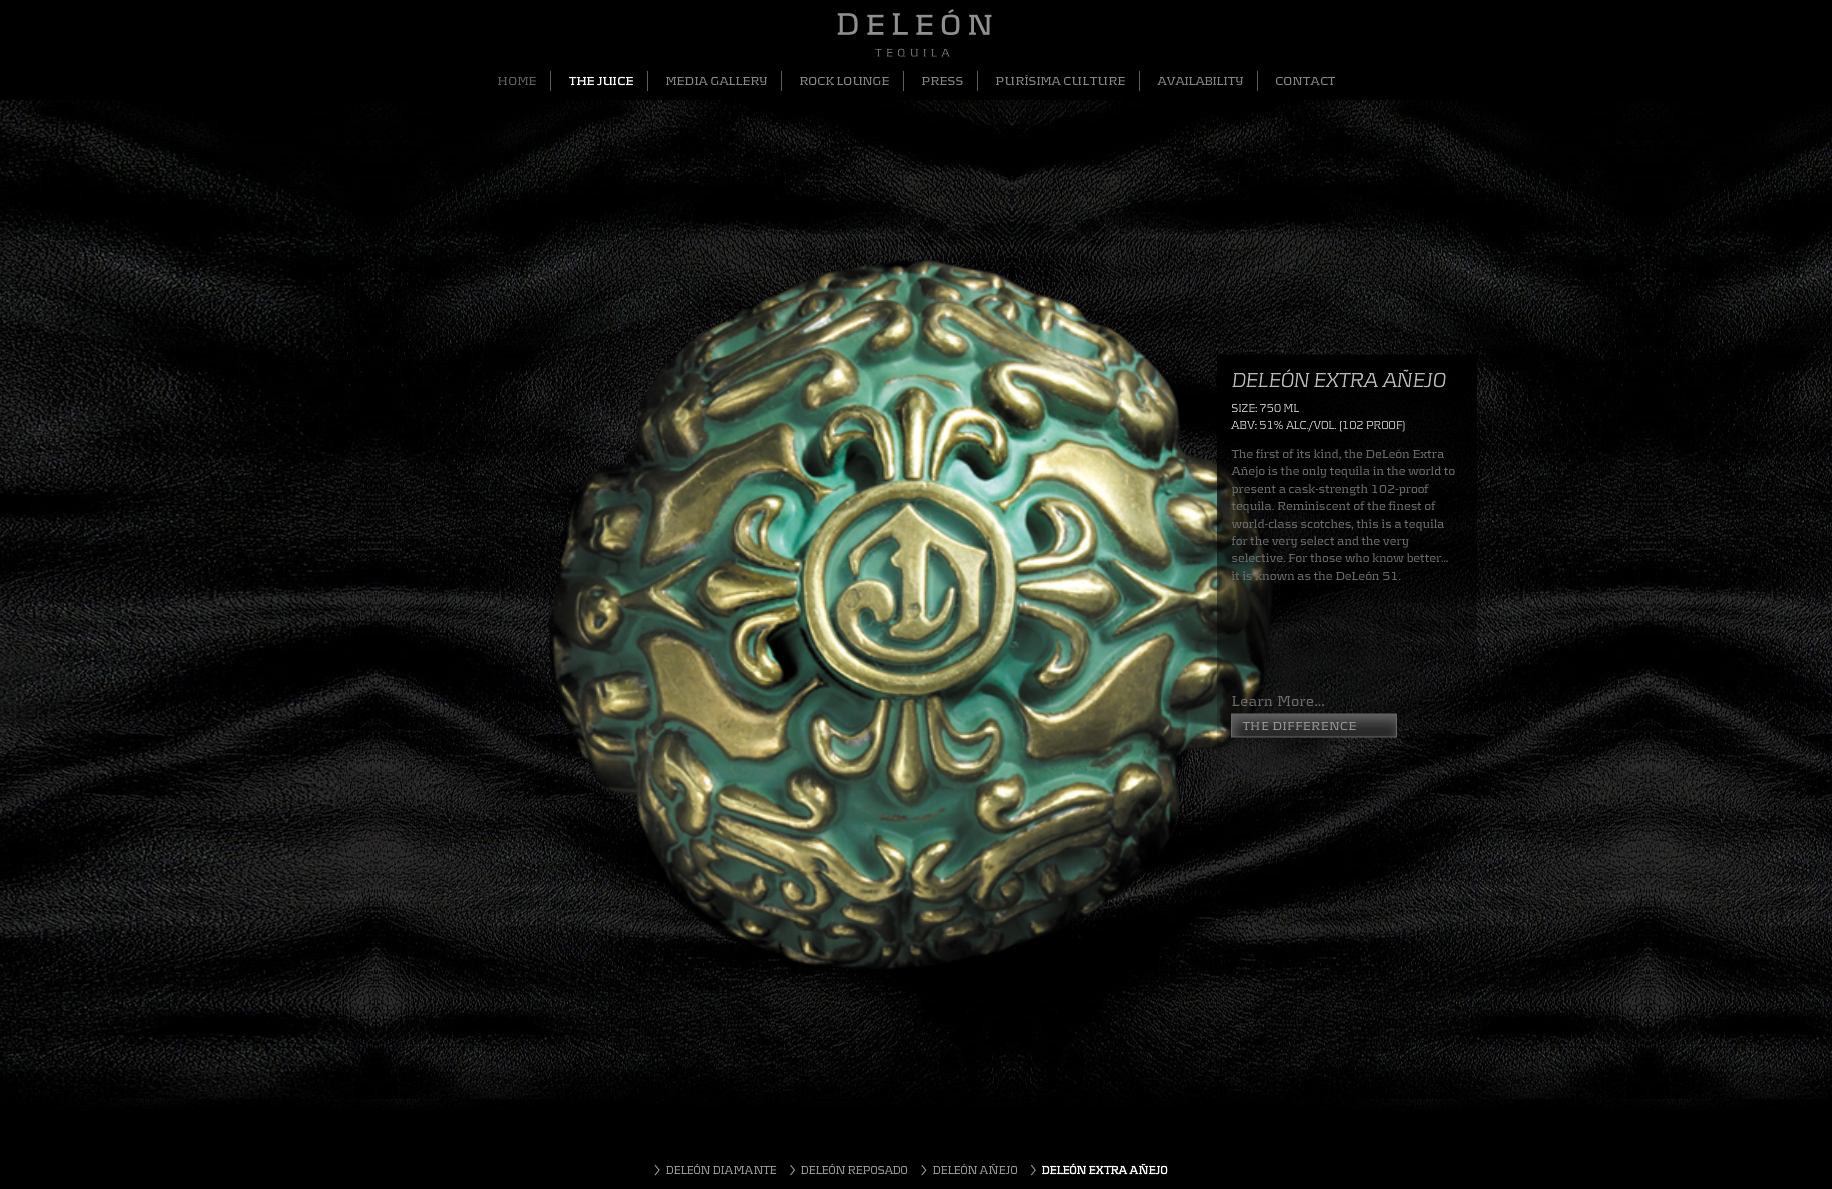 deleon-website-2